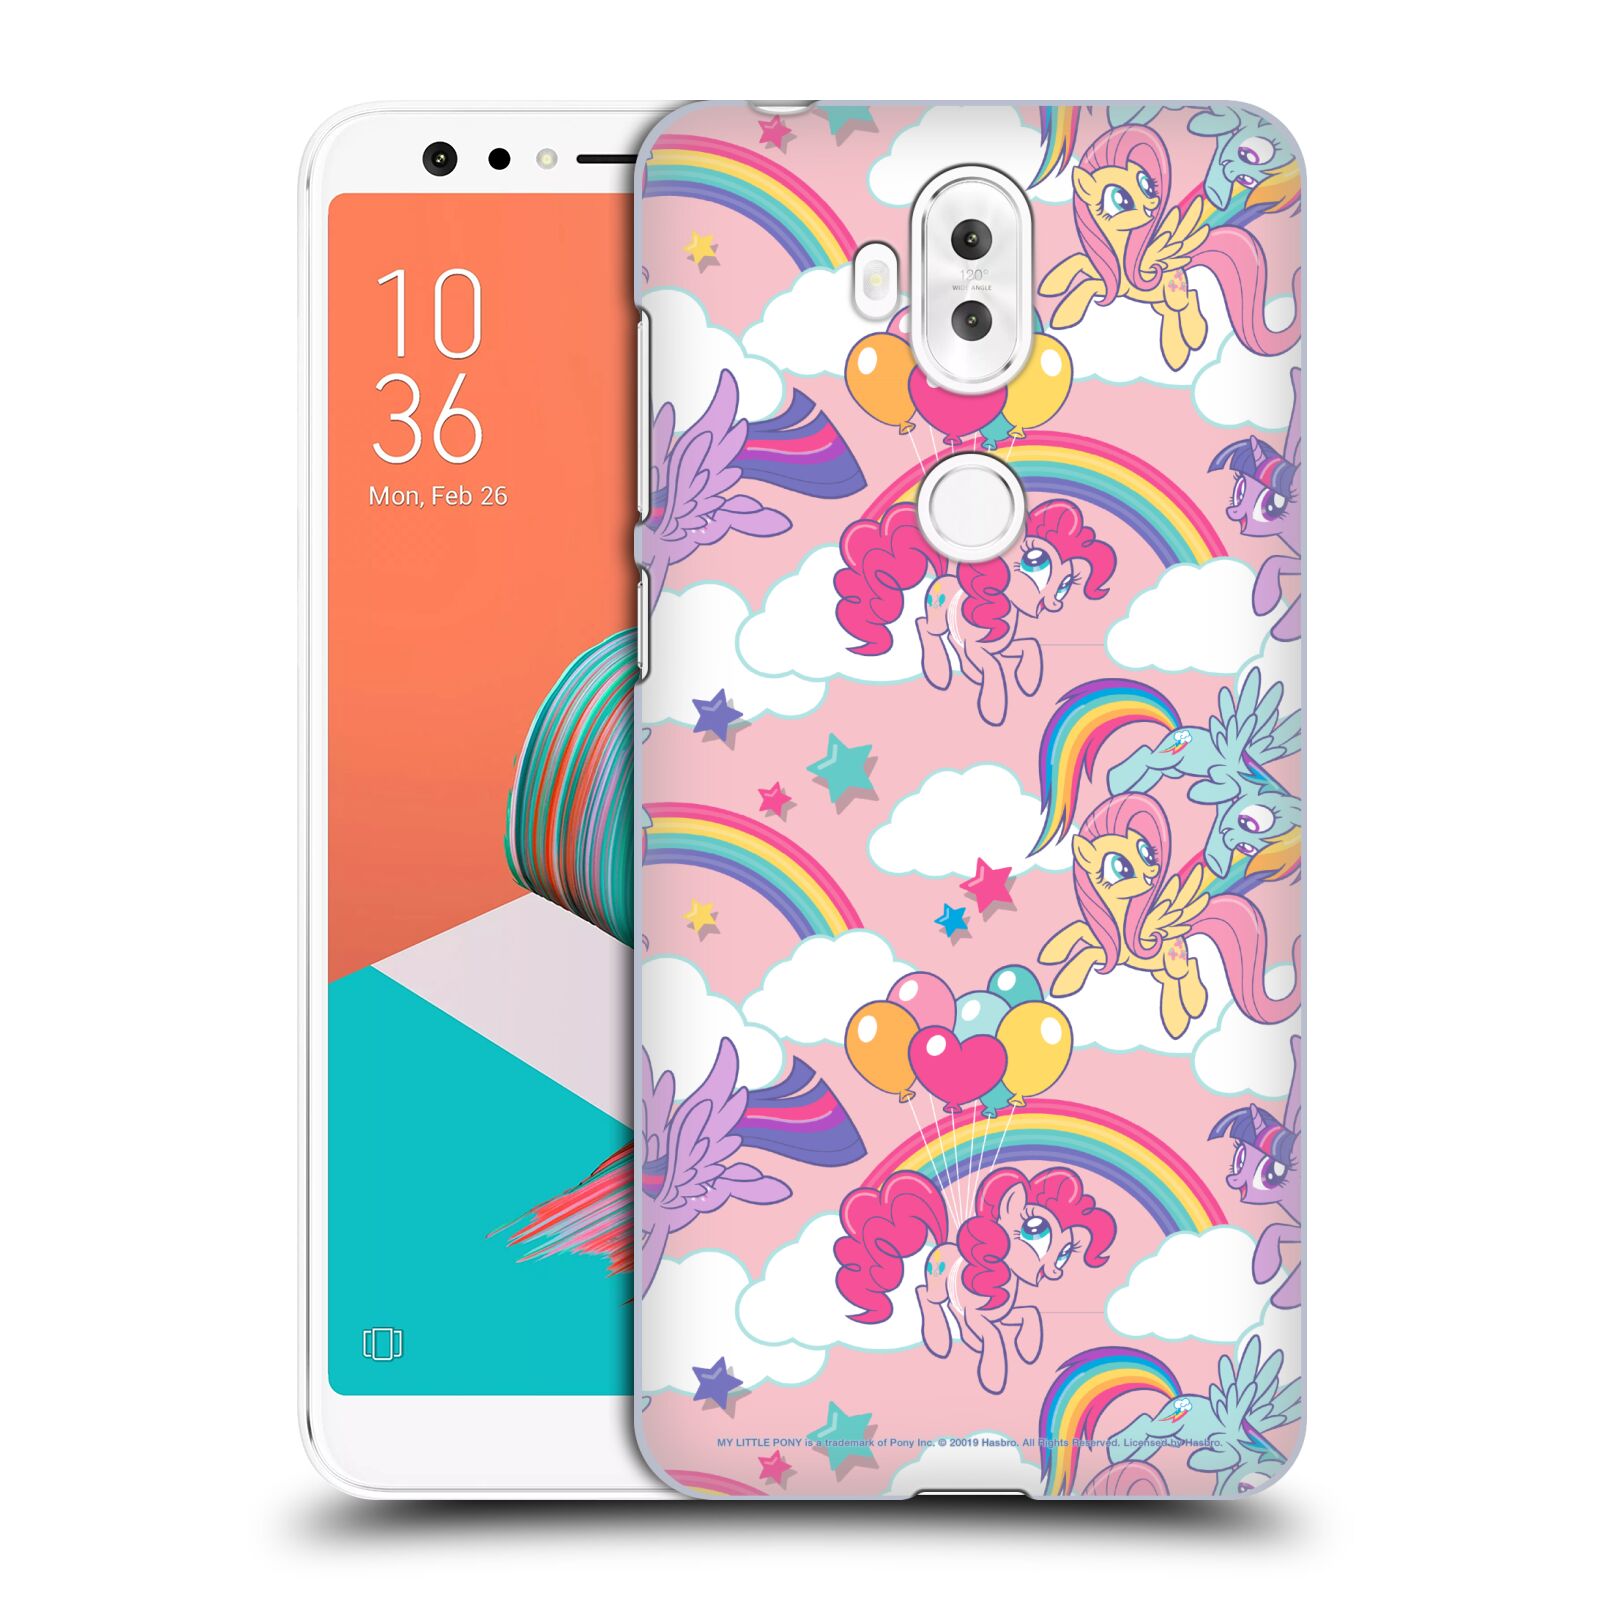 Zadní obal pro mobil Asus Zenfone 5 Lite ZC600KL - HEAD CASE - My Little Pony - růžová